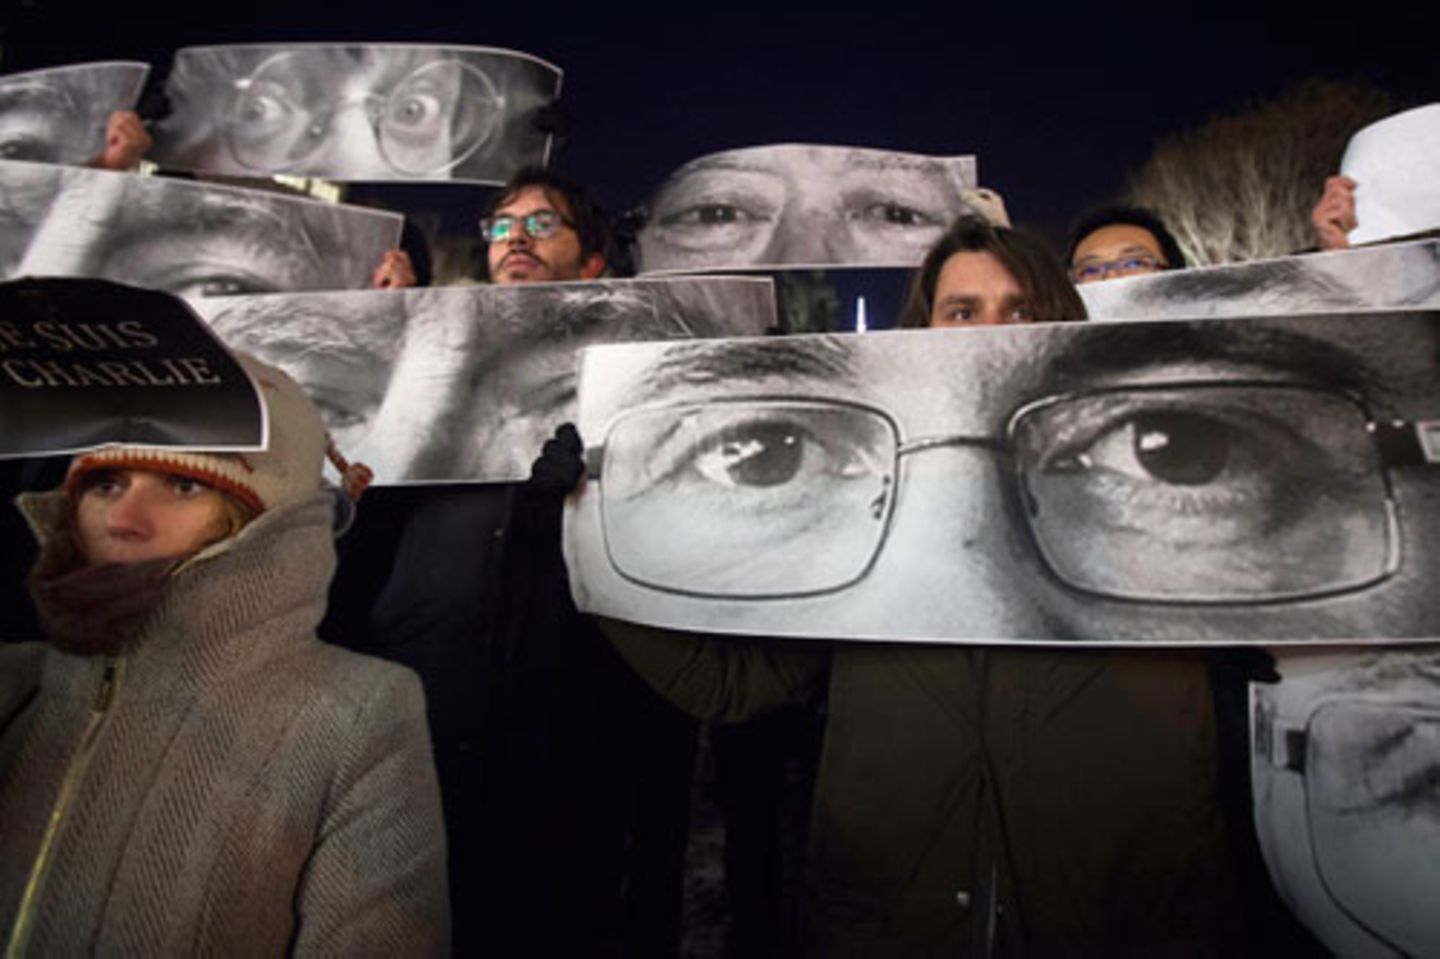 Auch Fotos der Opfer wurden auf Plakaten hochgehalten. Hier zu sehen: Die Augen der Karikaturisten Stephane Charbonnier (Künstlername "Charb", vorne) und Jean Cabut (Künstlername "Cabu", hinten links).